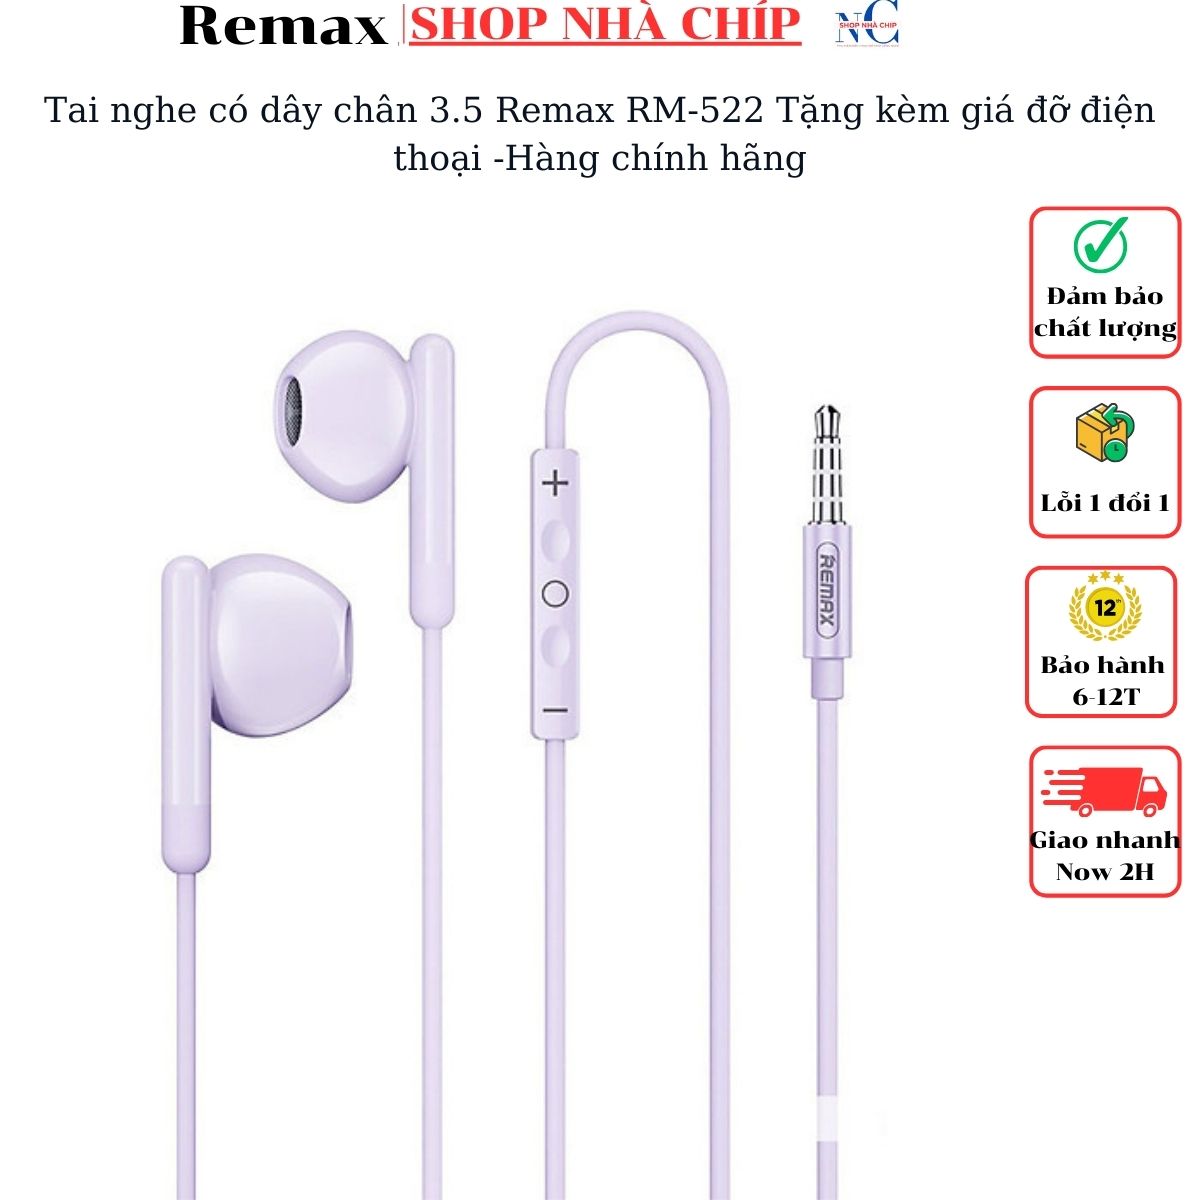 Tai nghe có dây chân 3.5 Remax RM-522 Tặng kèm giá đỡ điện thoại -Hàng chính hãng